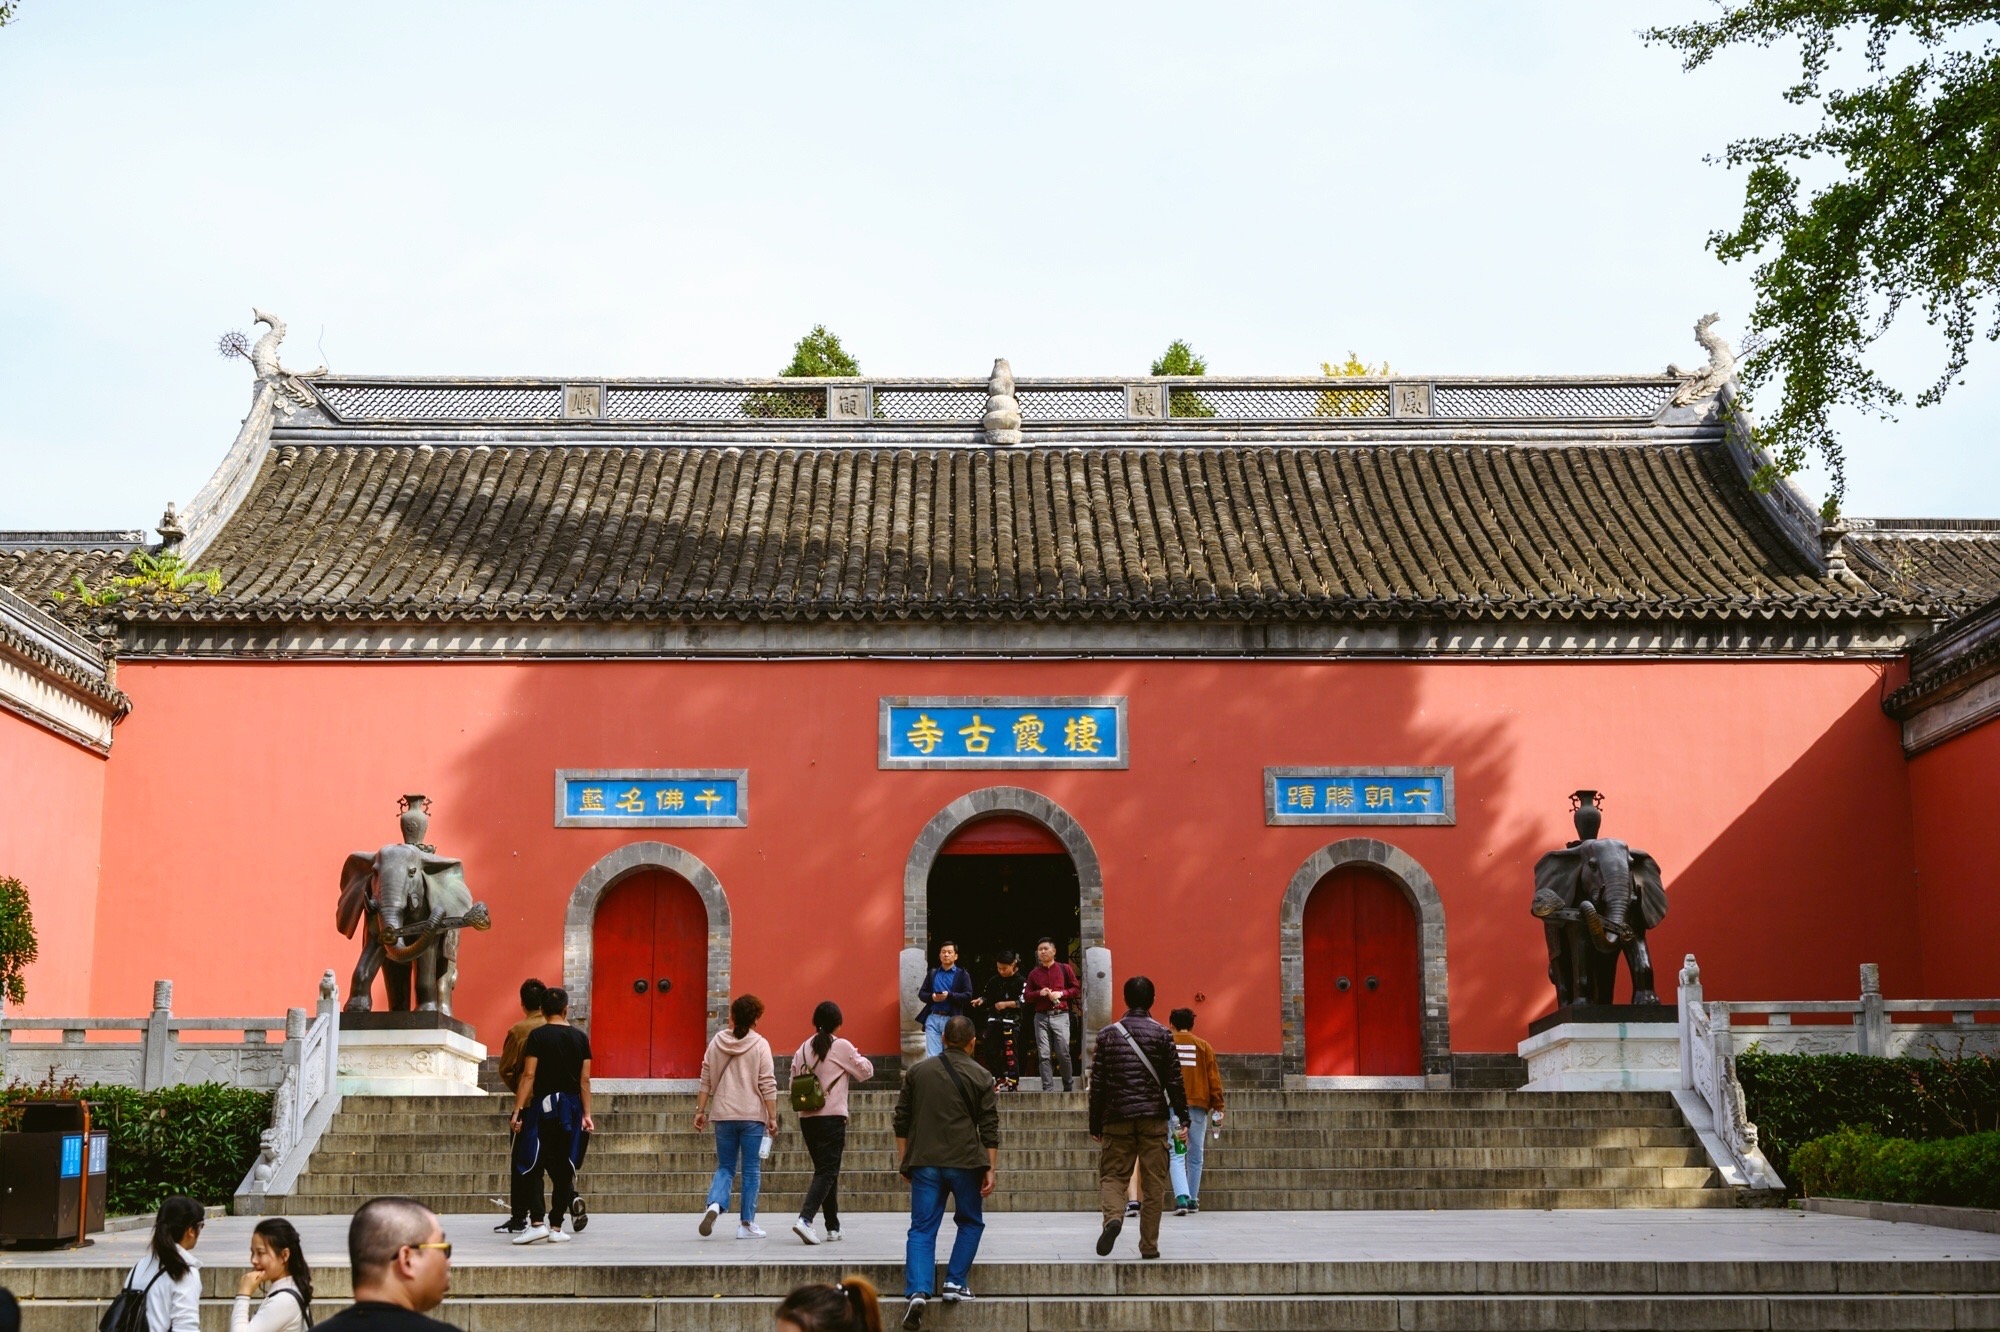 原创南京栖霞寺,中国四大名刹之一,寺内珍藏有我国最大的舍利塔